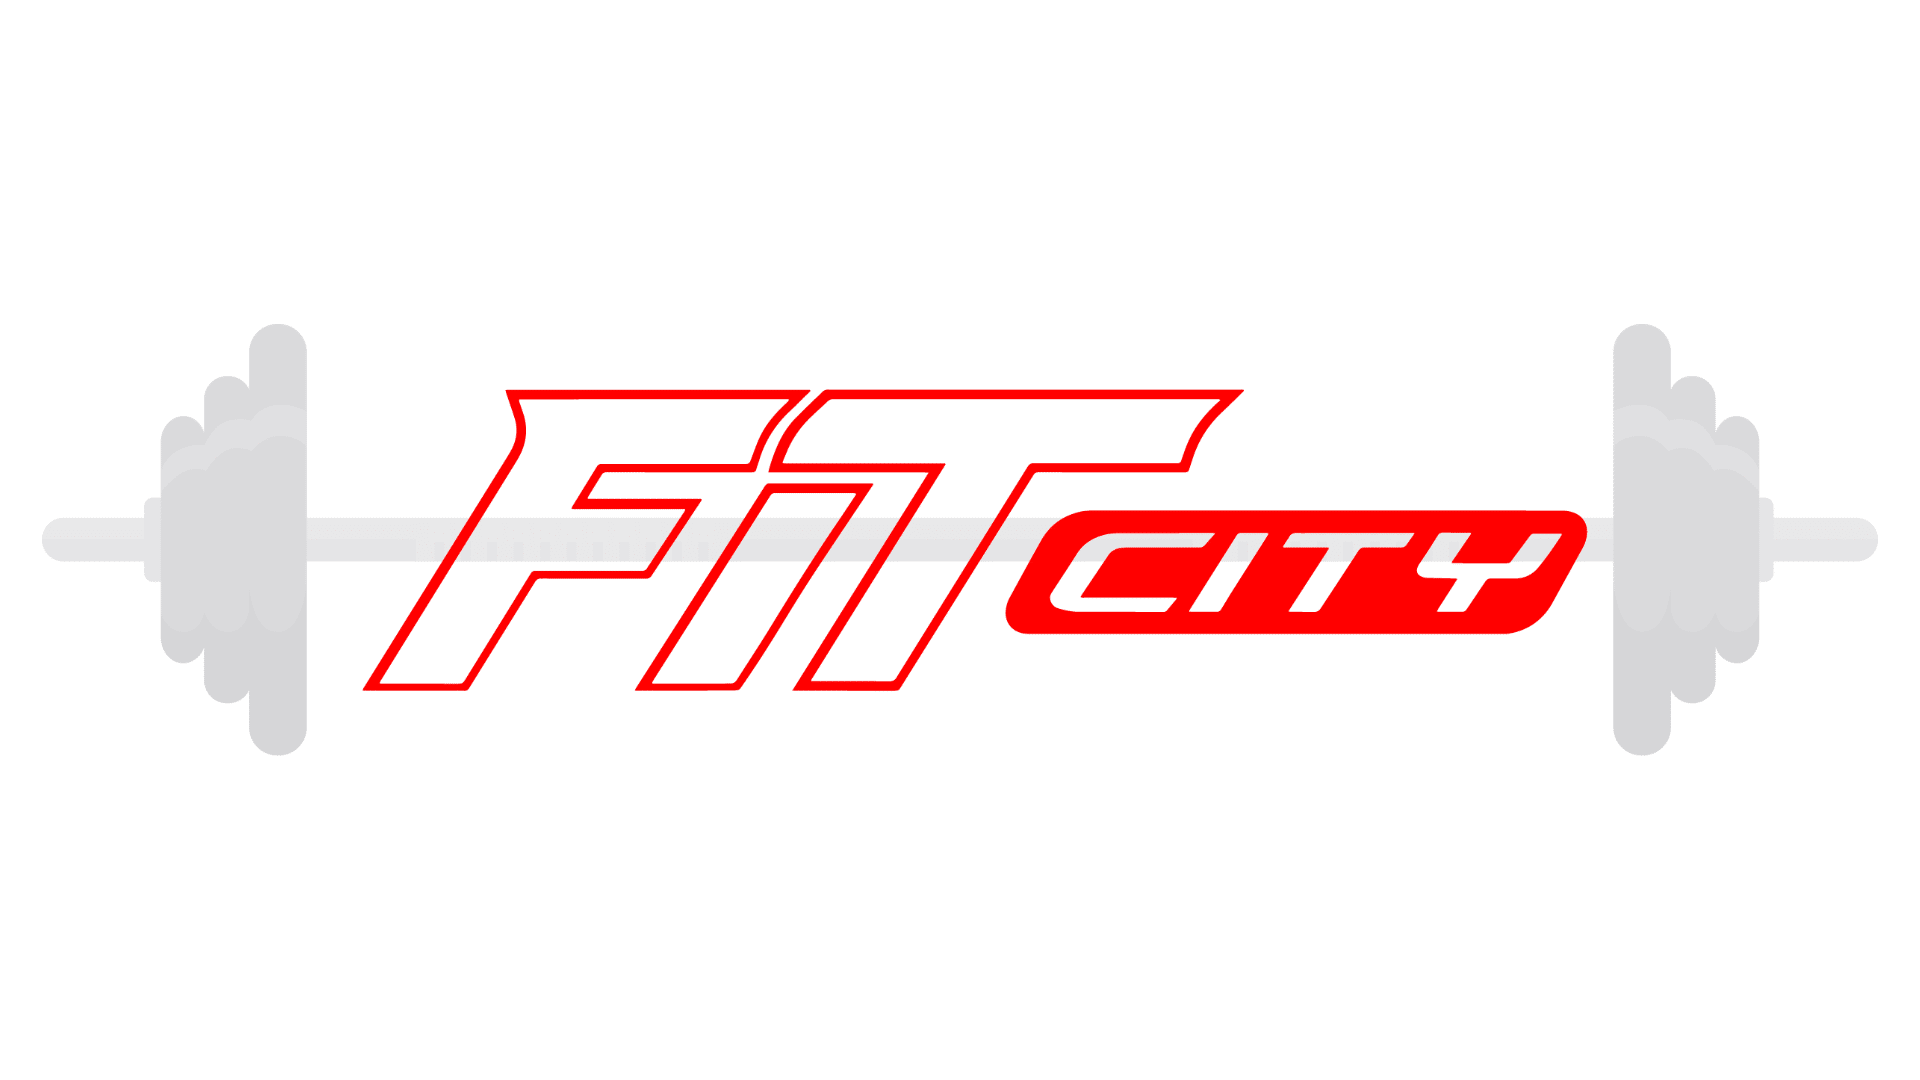 fit-city-cottleville-alternative-logo